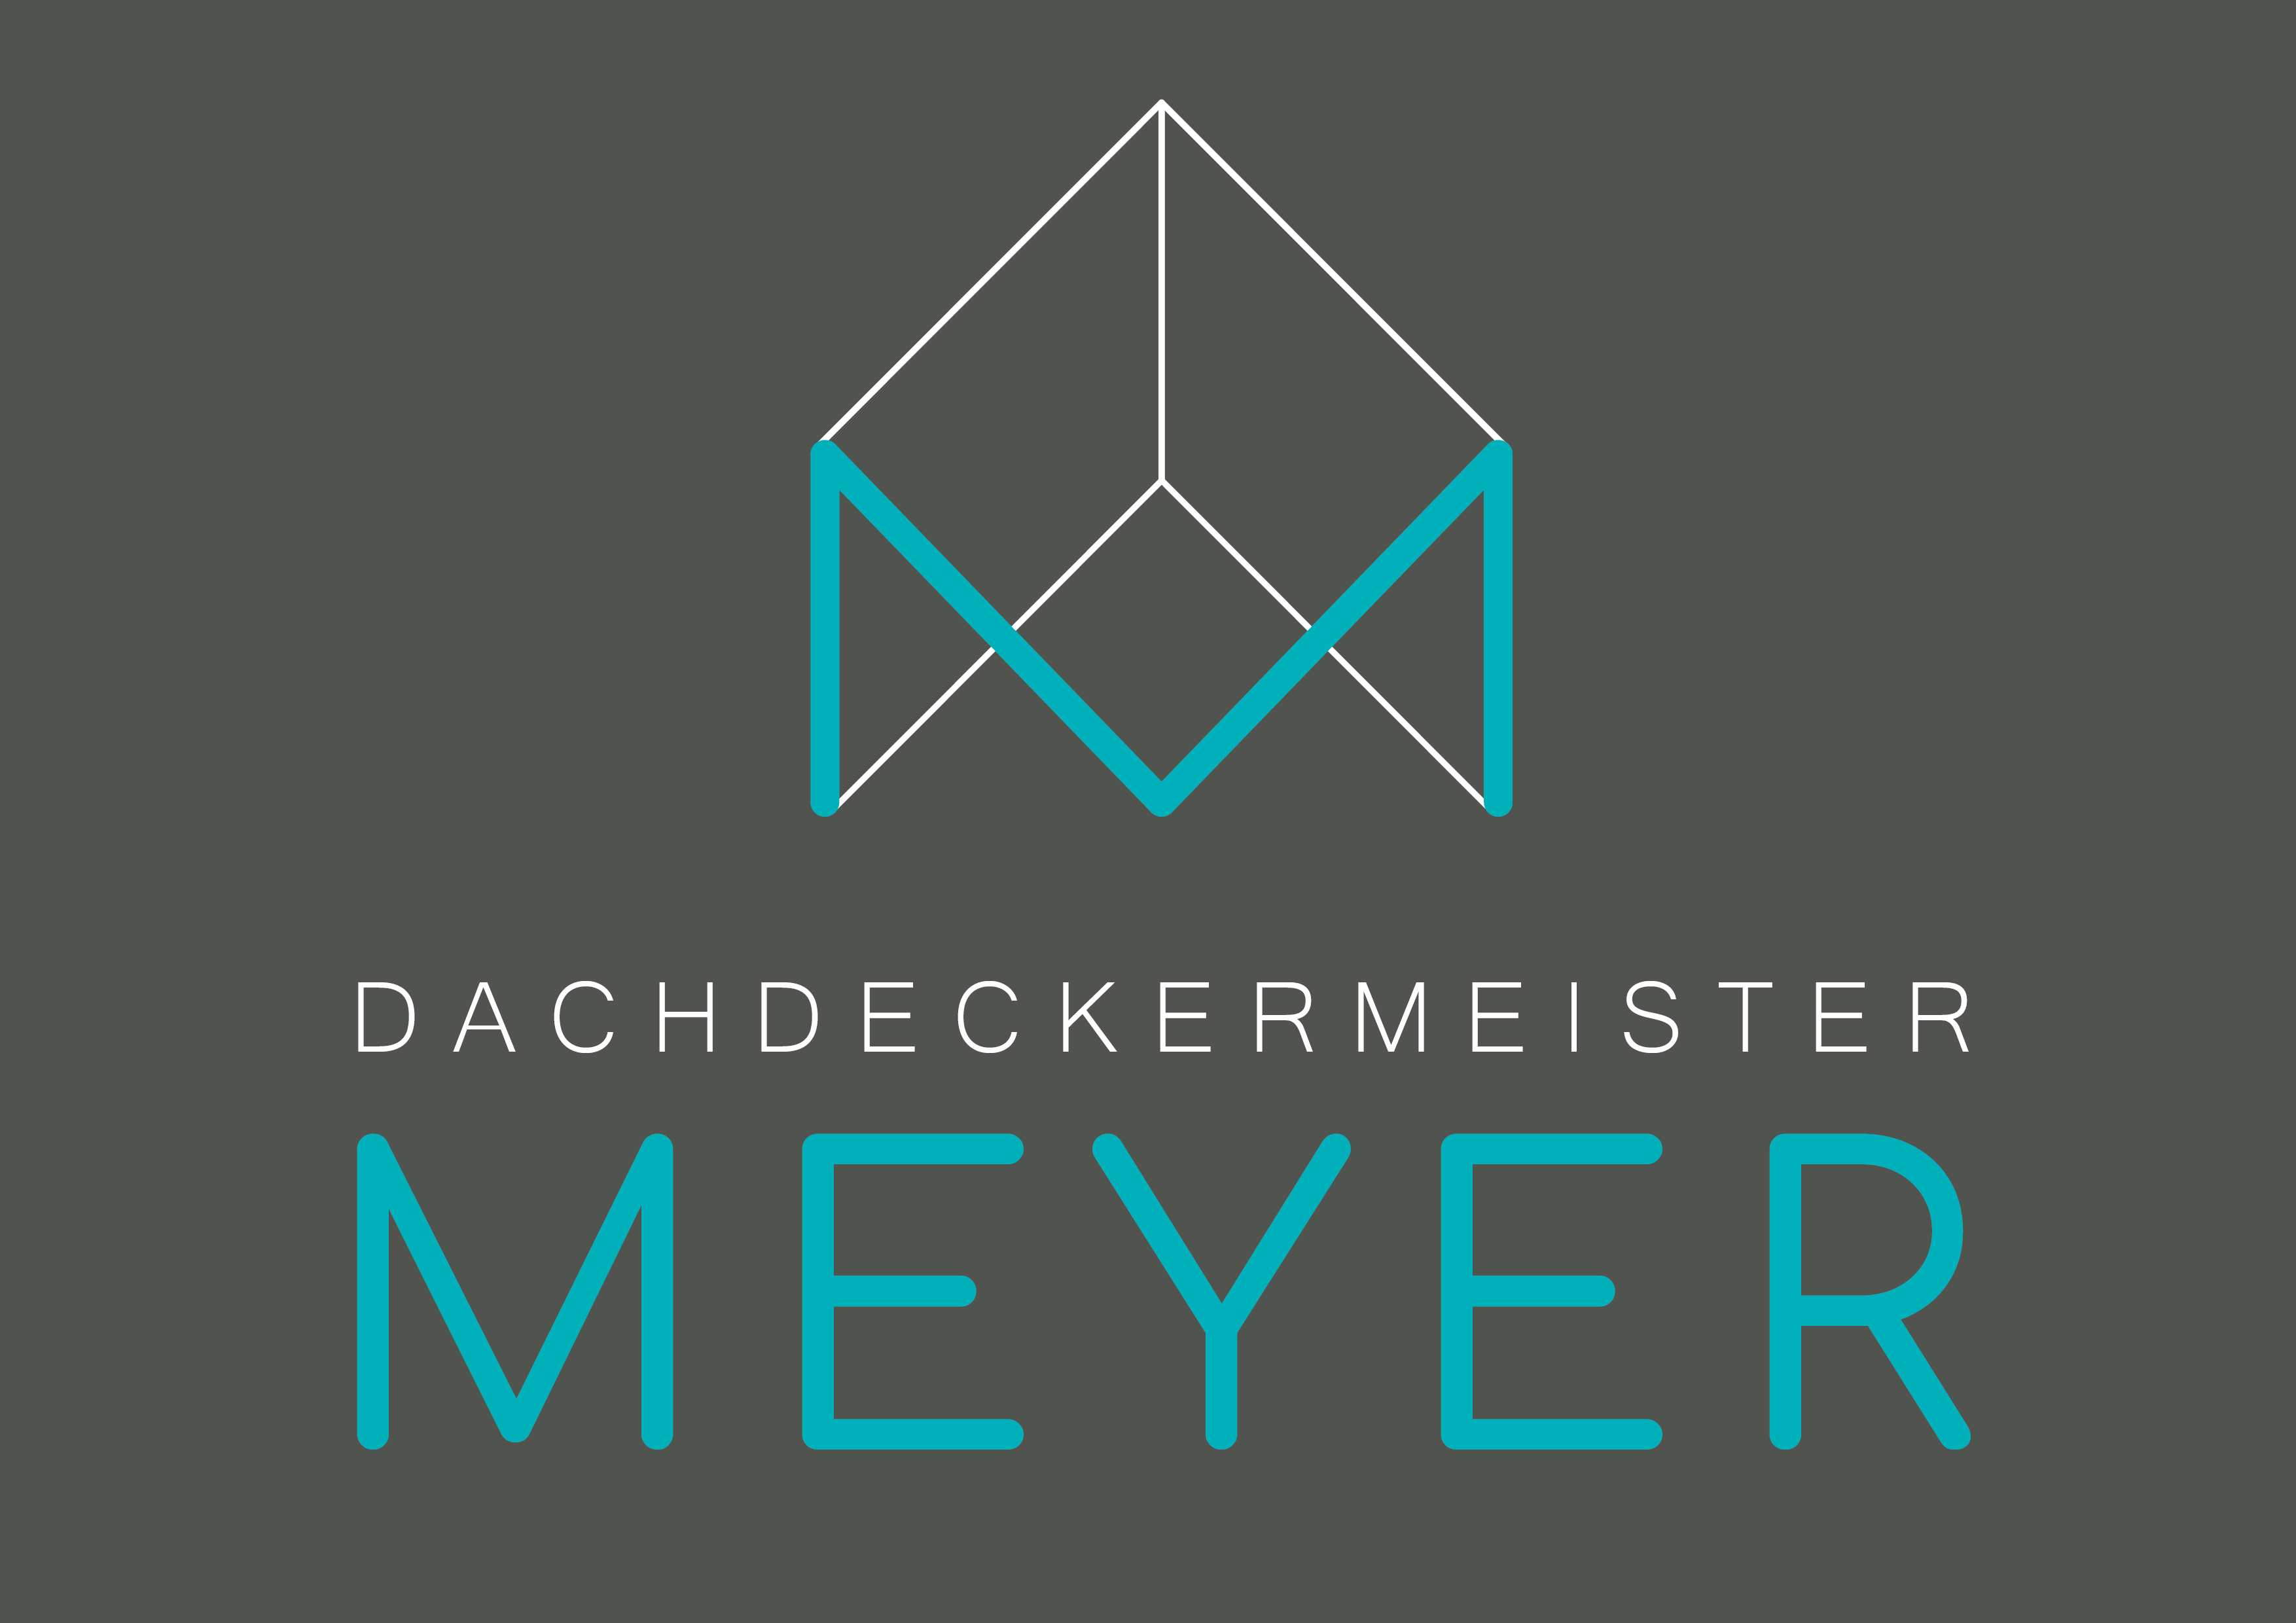 (c) Dachdeckermeister-meyer.de